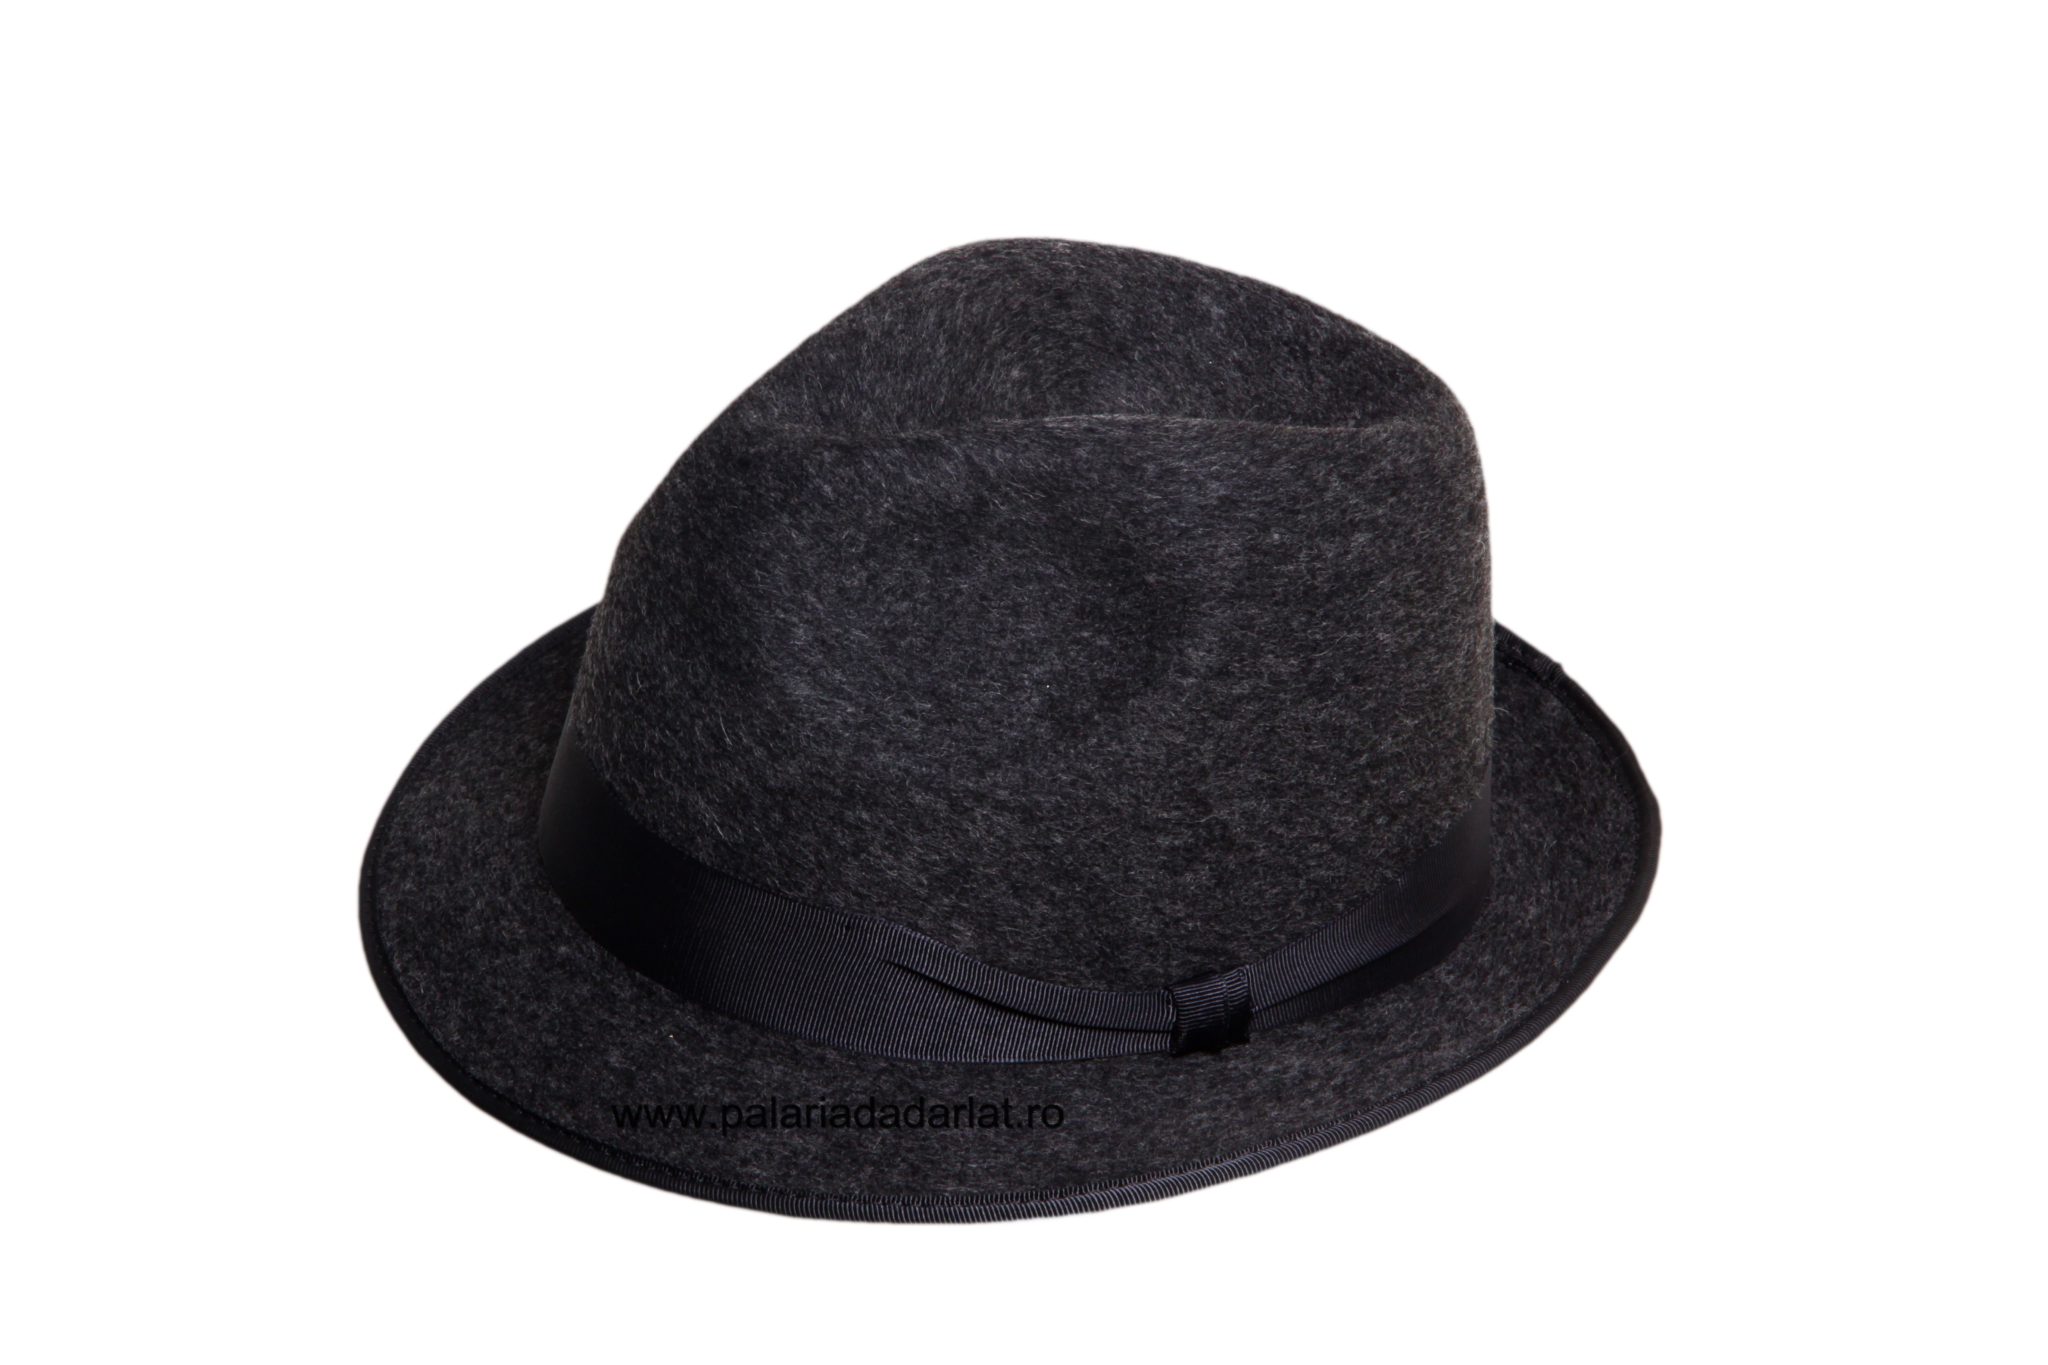 shorten Ham cheap Pălărie Pentru Bărbaţi Bor Ingust - Pălăria Dădârlat